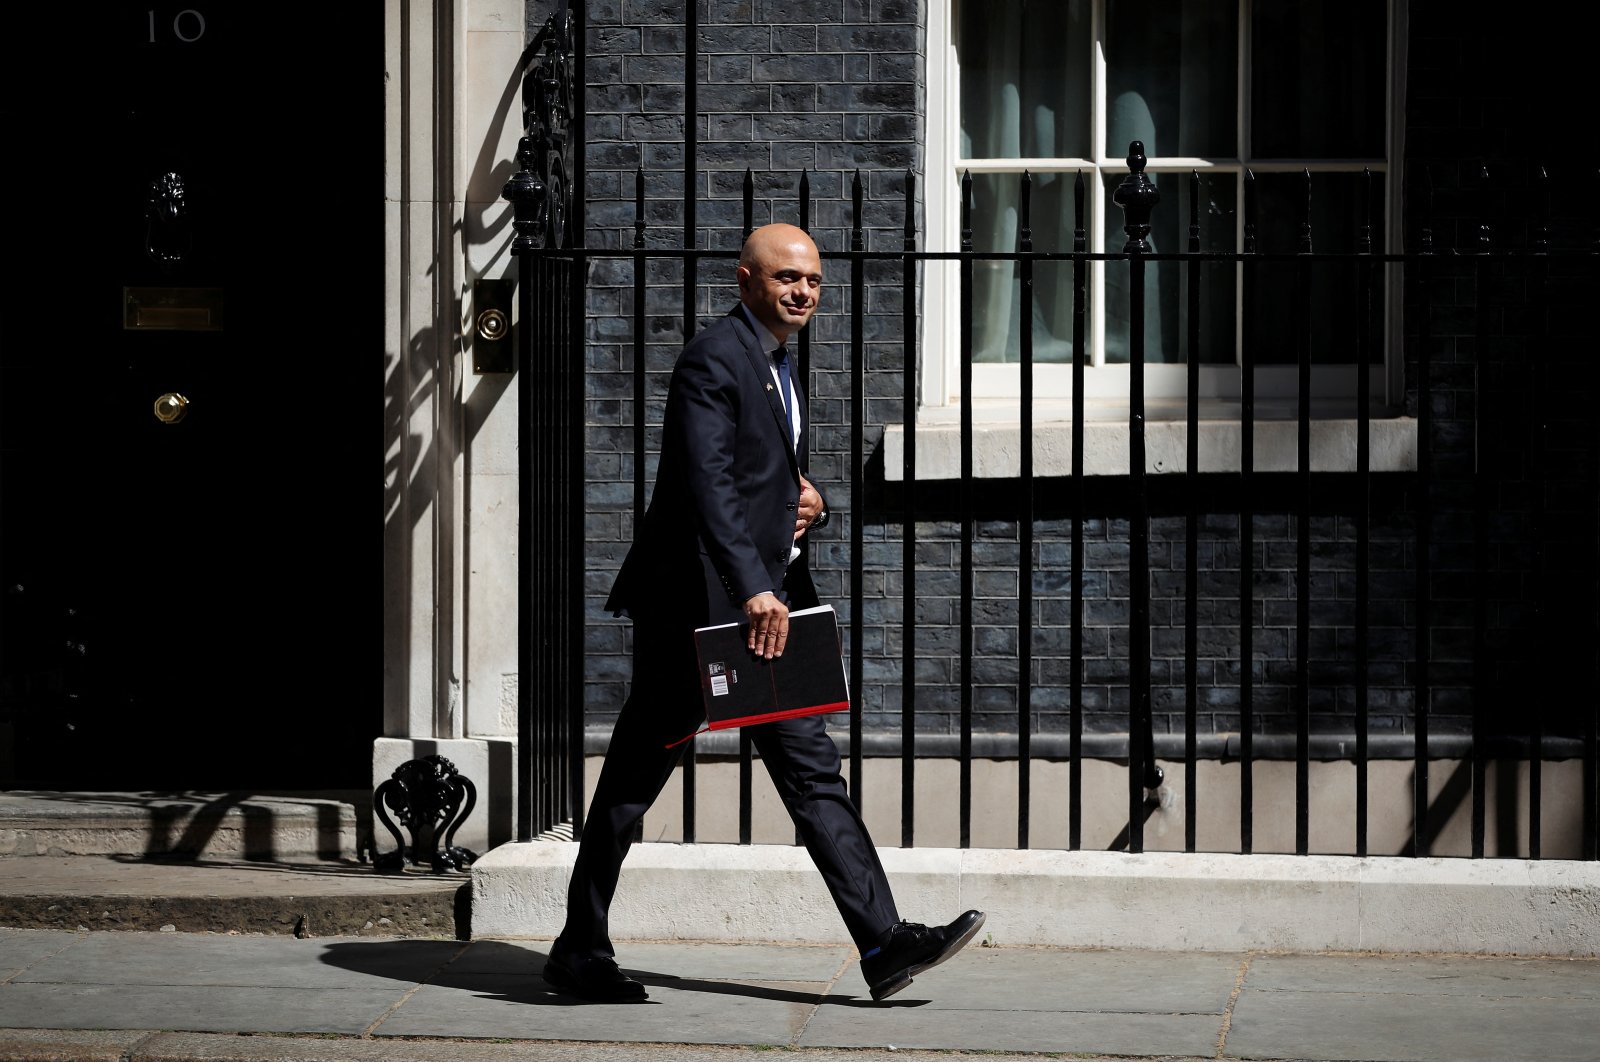 Keuangan Inggris, menteri kesehatan mengundurkan diri sebagai protes atas kepemimpinan Johnson